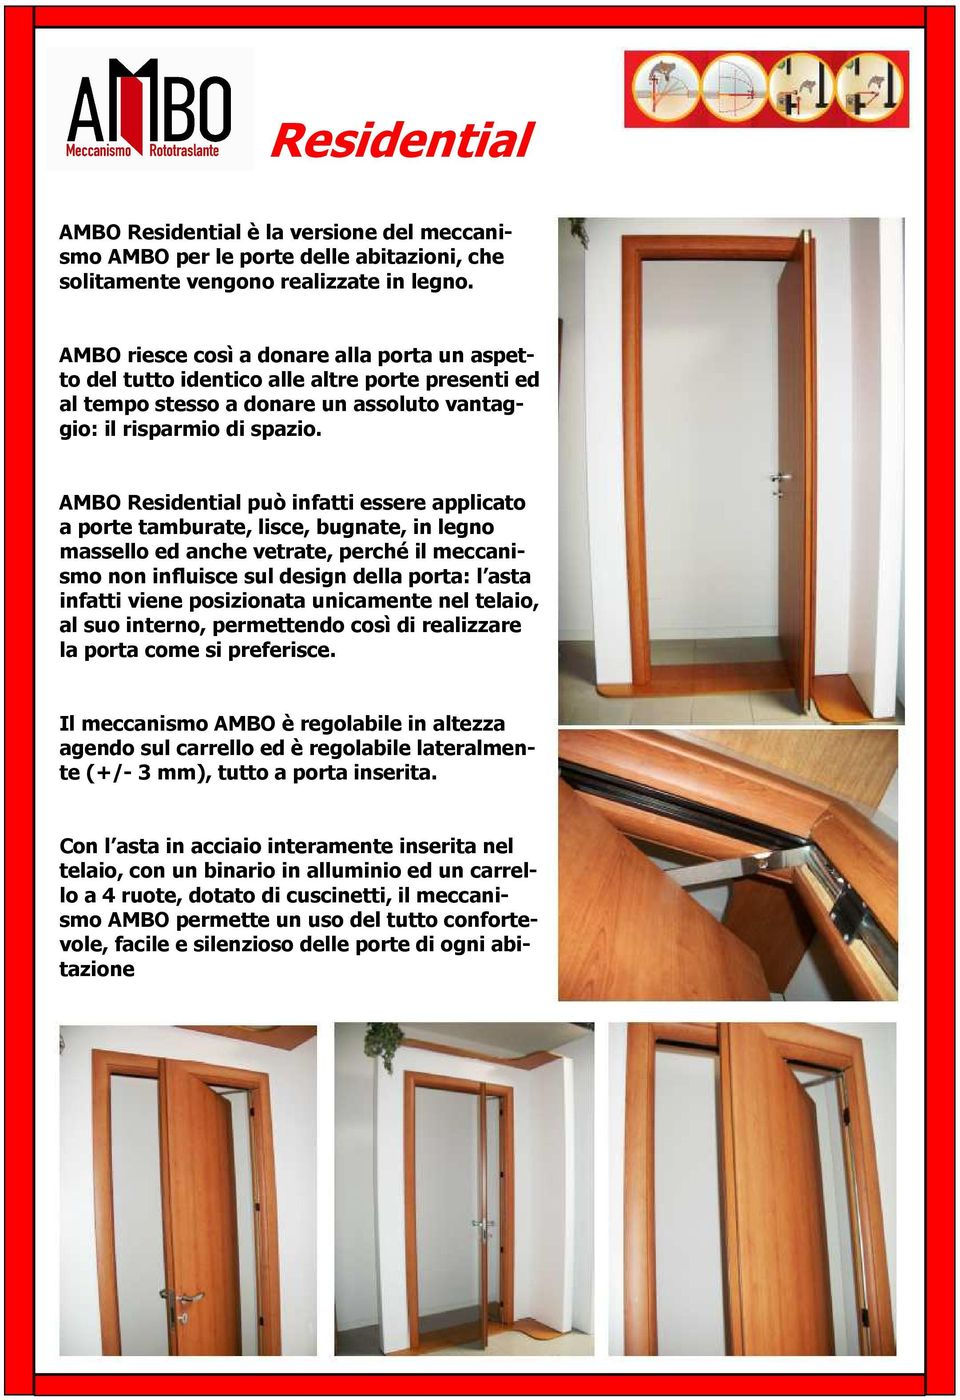 AMBO Residential può infatti essere applicato a porte tamburate, lisce, bugnate, in legno massello ed anche vetrate, perché il meccanismo non influisce sul design della porta: l asta infatti viene